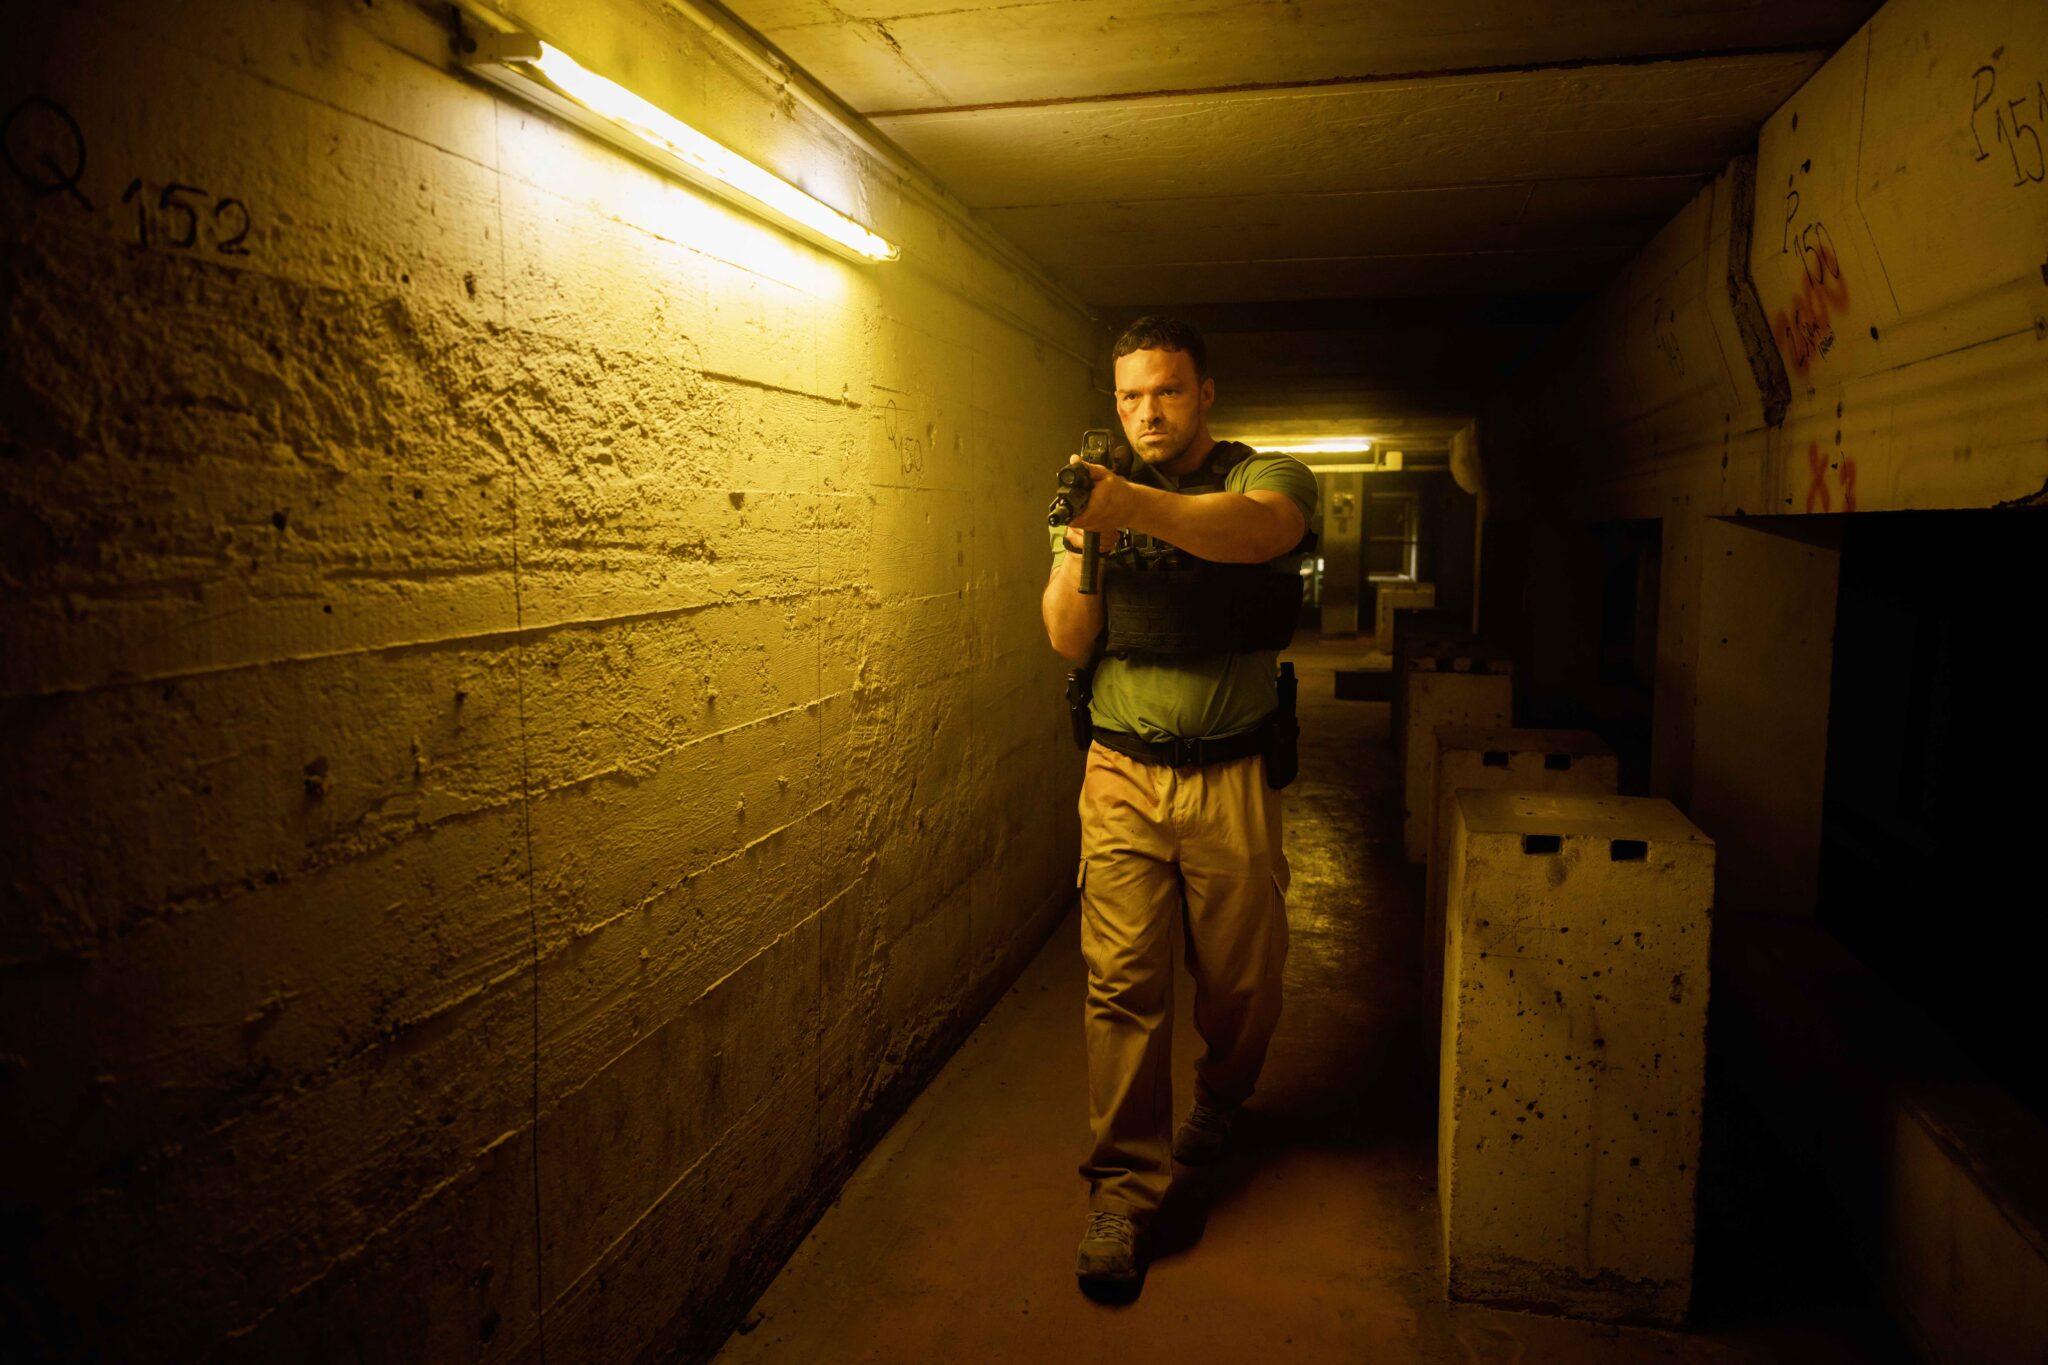 Ein Polizist mit Schussweste geht mit erhobener Waffe durch einen engen, dunklen Kellergang. AKA